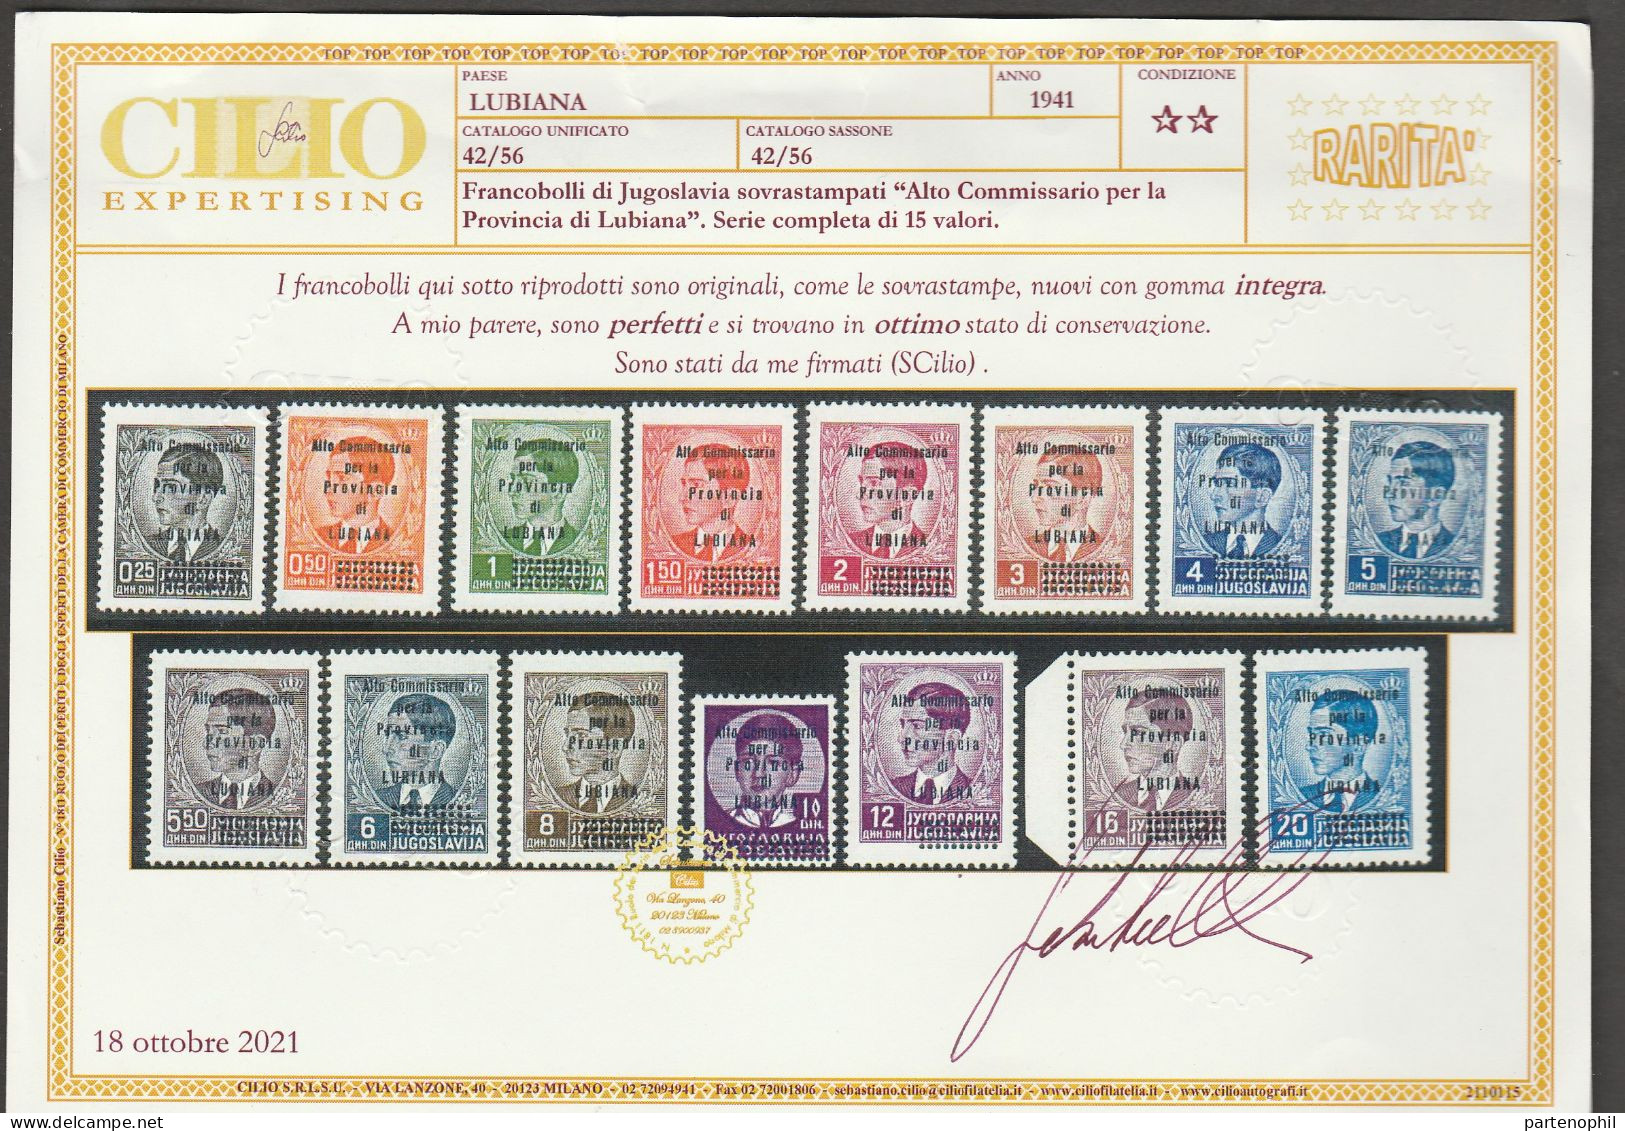 Lotto 273 Lubiana 1941 - Francobolli Di Jugoslavia Soprastampati In Azzurro “Alto Commissariato Per La Provincia Di MNH - Ljubljana